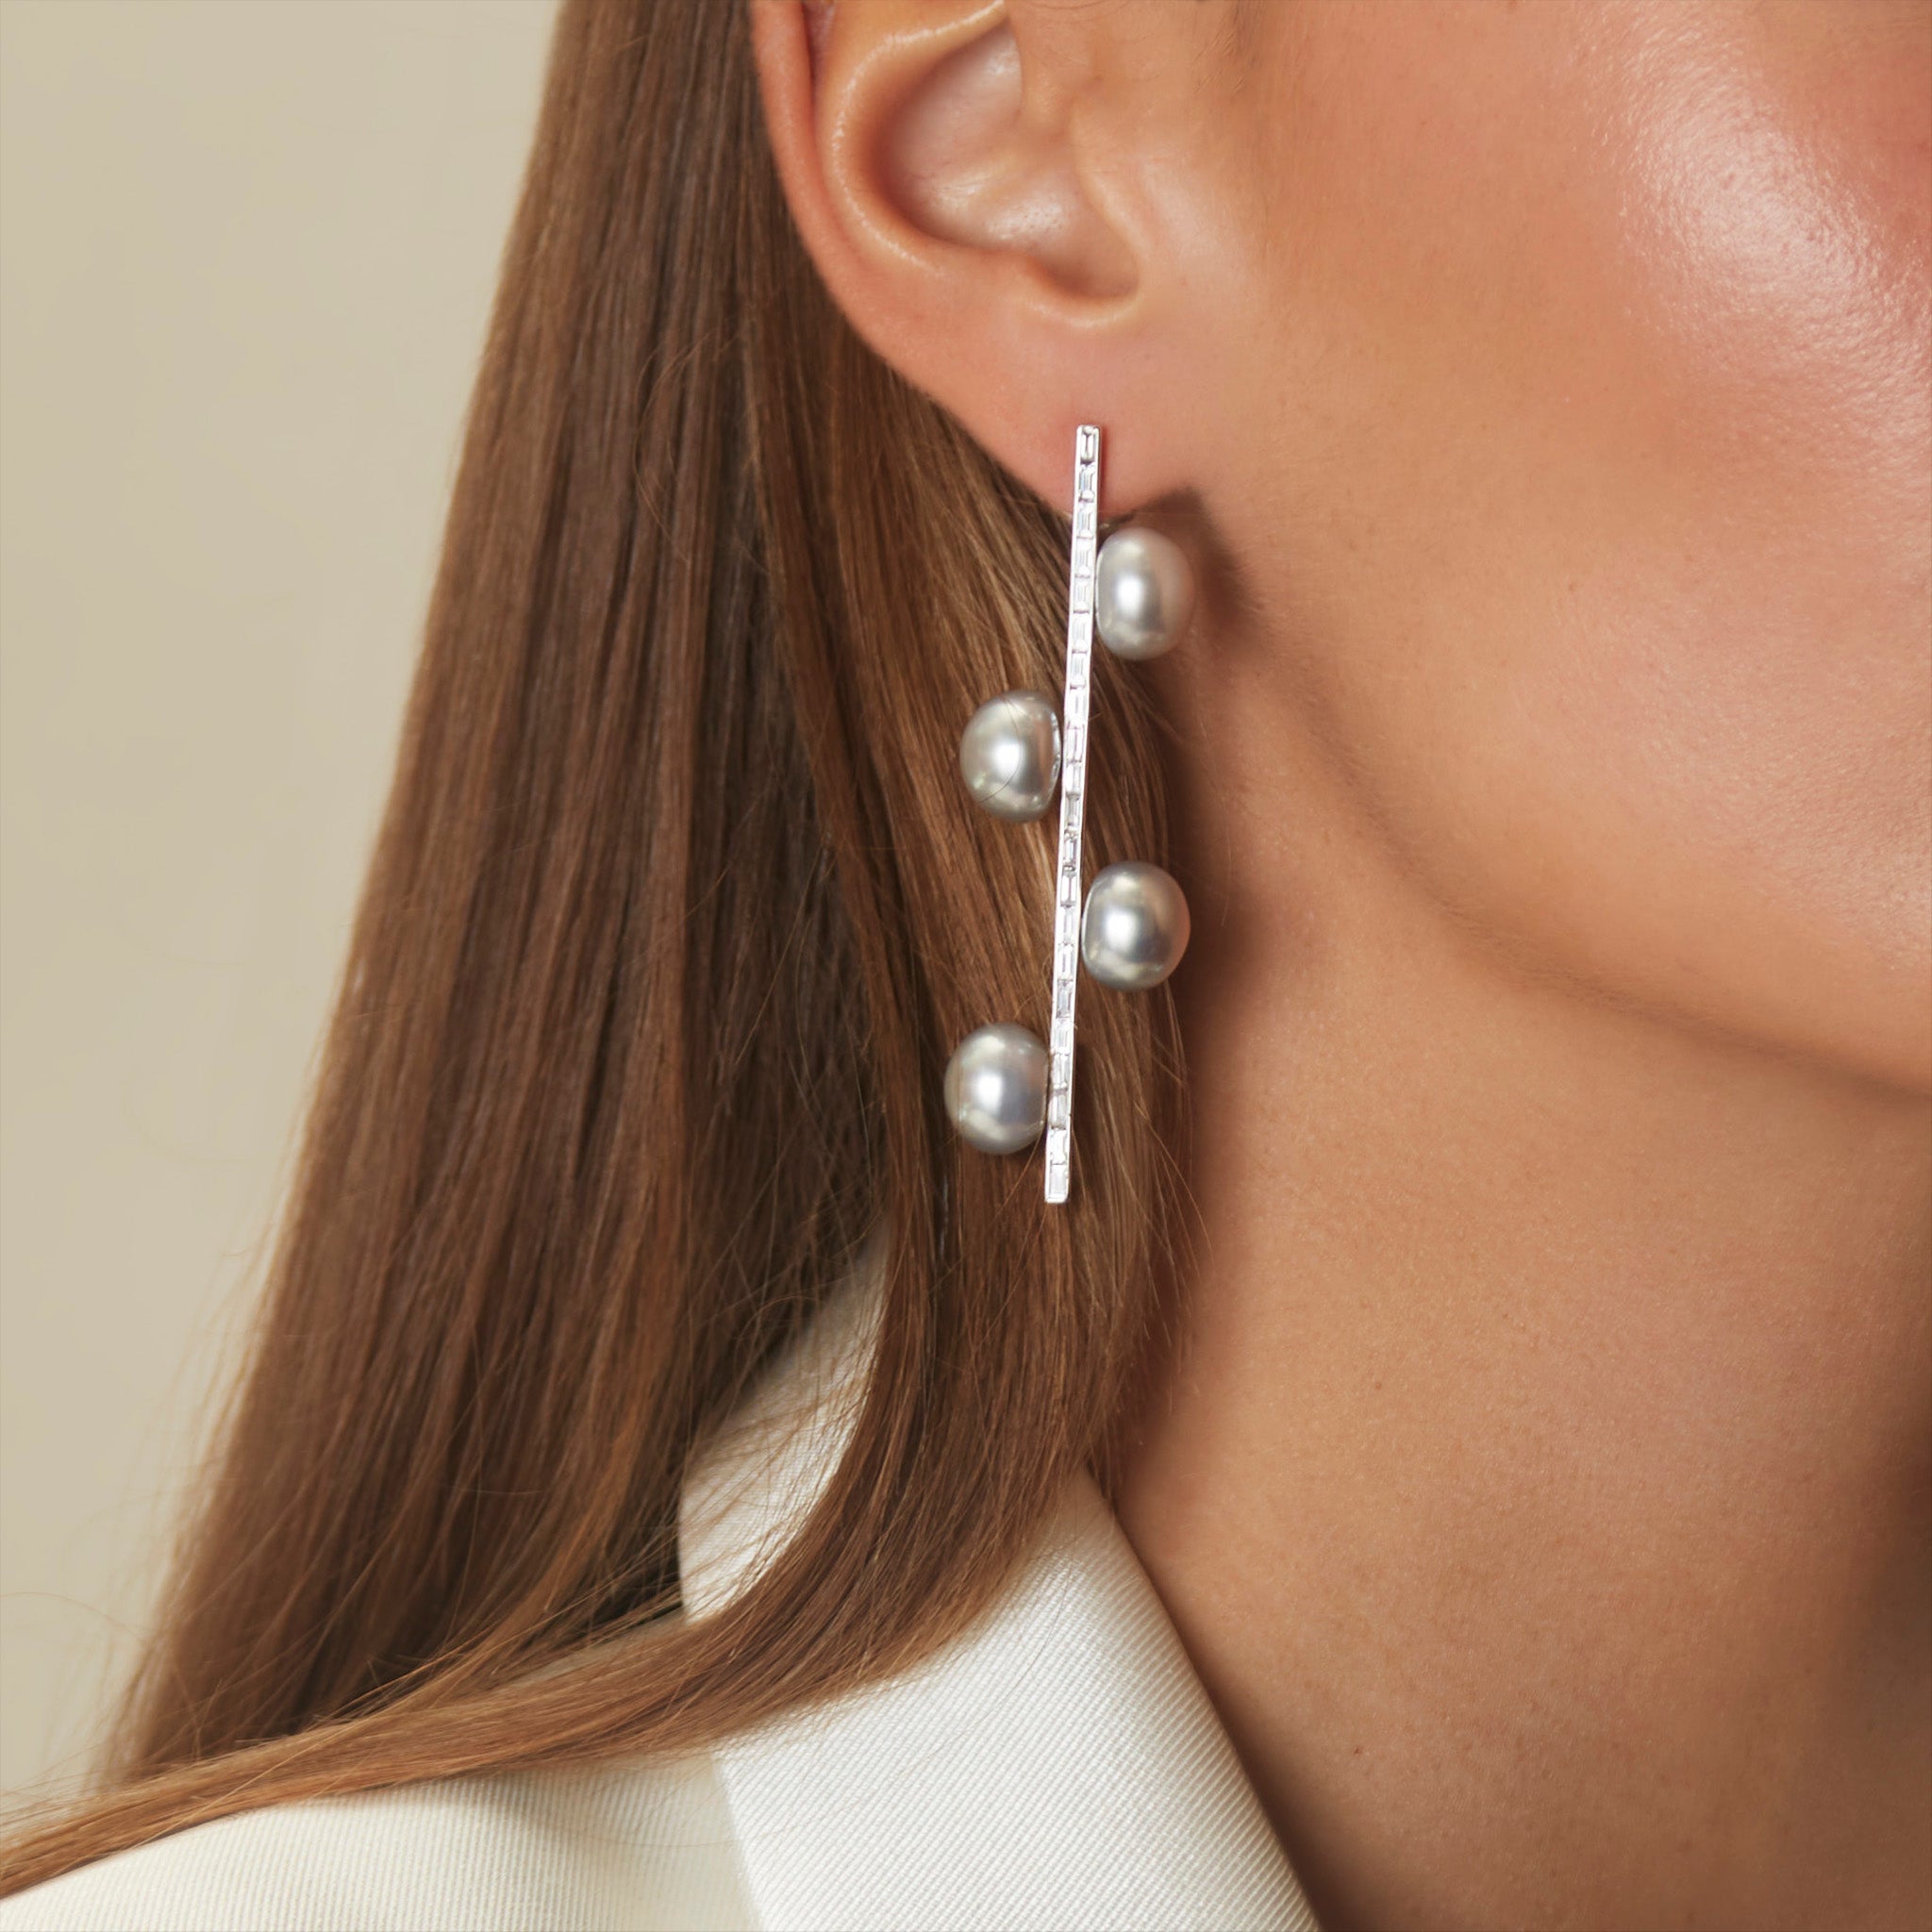 Baguette Diamond and Pearl Drop Earrings